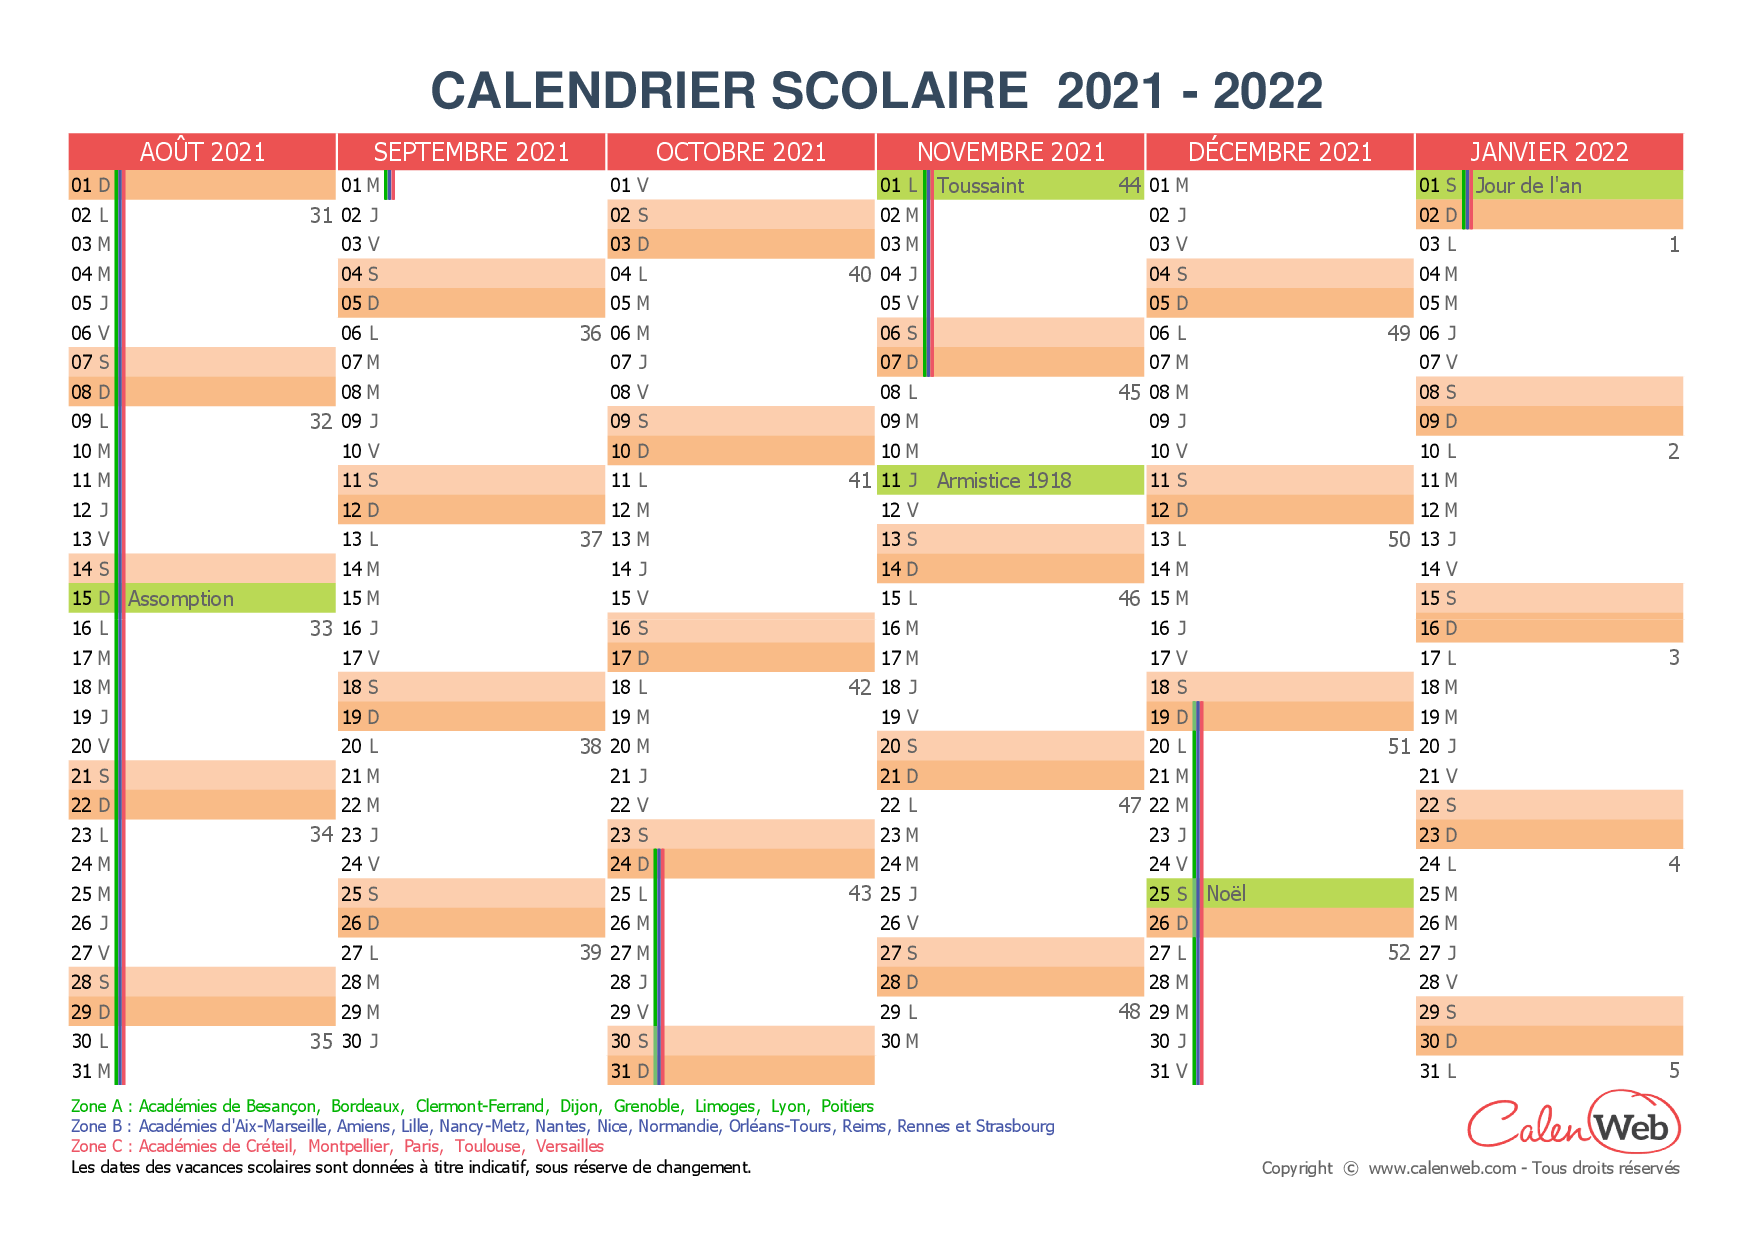 Calendrier Semestriel 2022 Avec Vacances Scolaires Calendrier scolaire semestriel 2021 2022 avec affichage des jours 